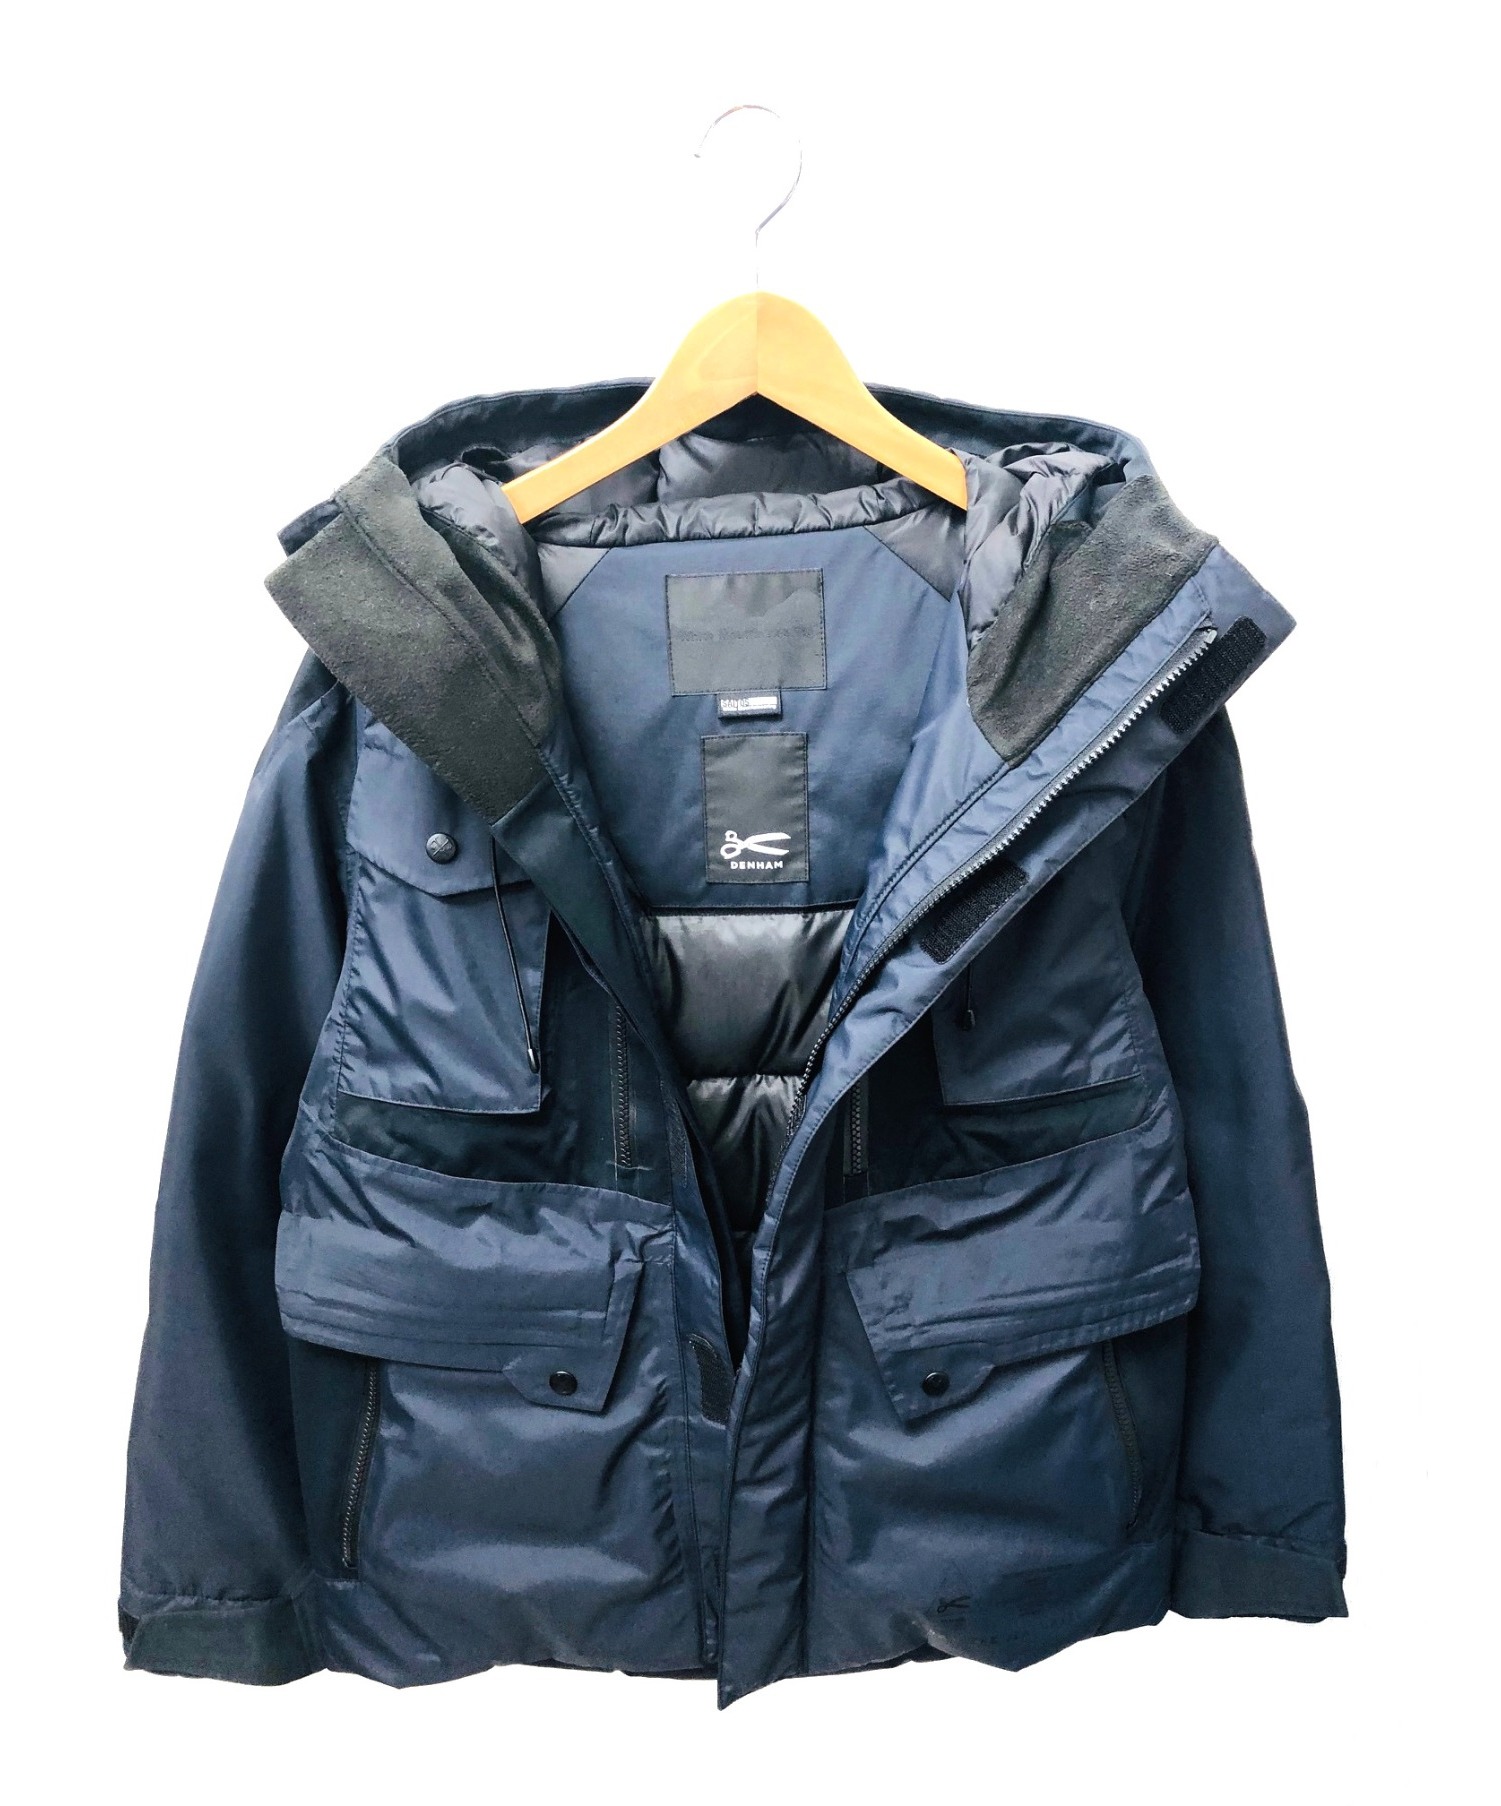 日本激安販壳サイト  スプリングジャケット DENHAM 試着のみ美品 ミリタリージャケット